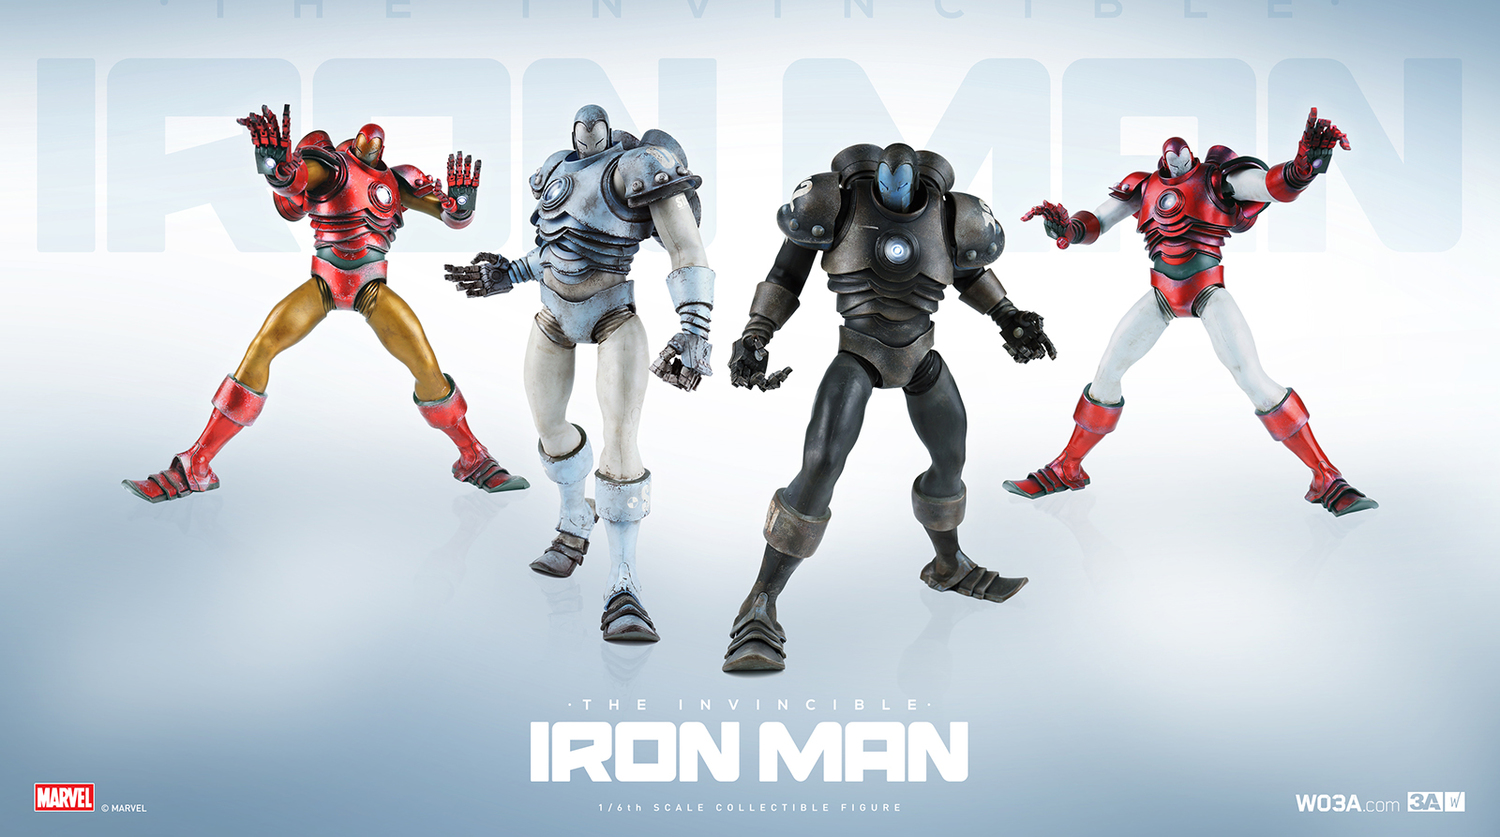 ThreeA Toys Iron Man Figures Photos & Release Info! - Marvel Toy News